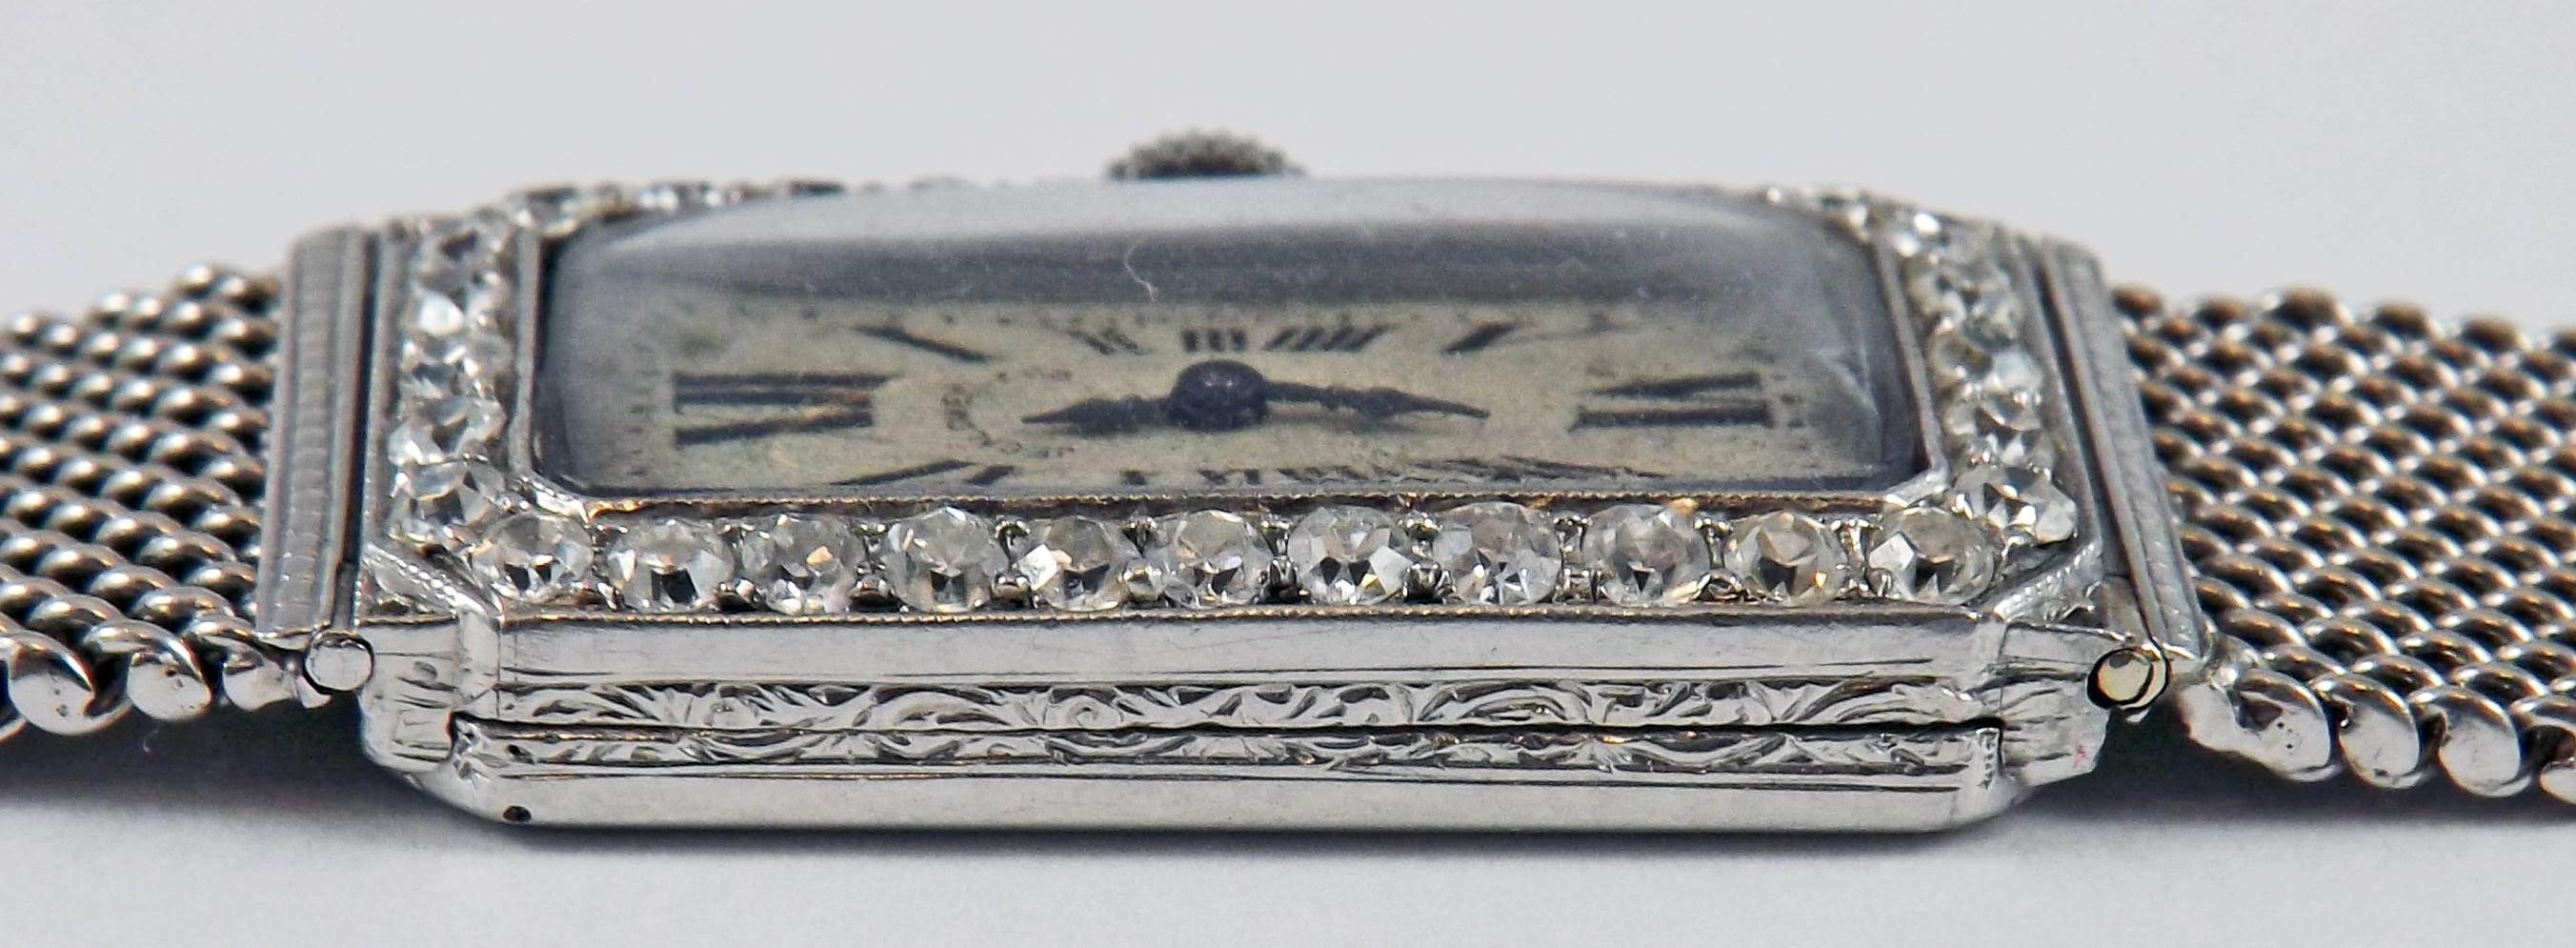 Magnifique montre-bracelet Art déco pour dame en platine et diamants par J.E. Caldwell. Le cadran original avec des chiffres romains noirs est signé 